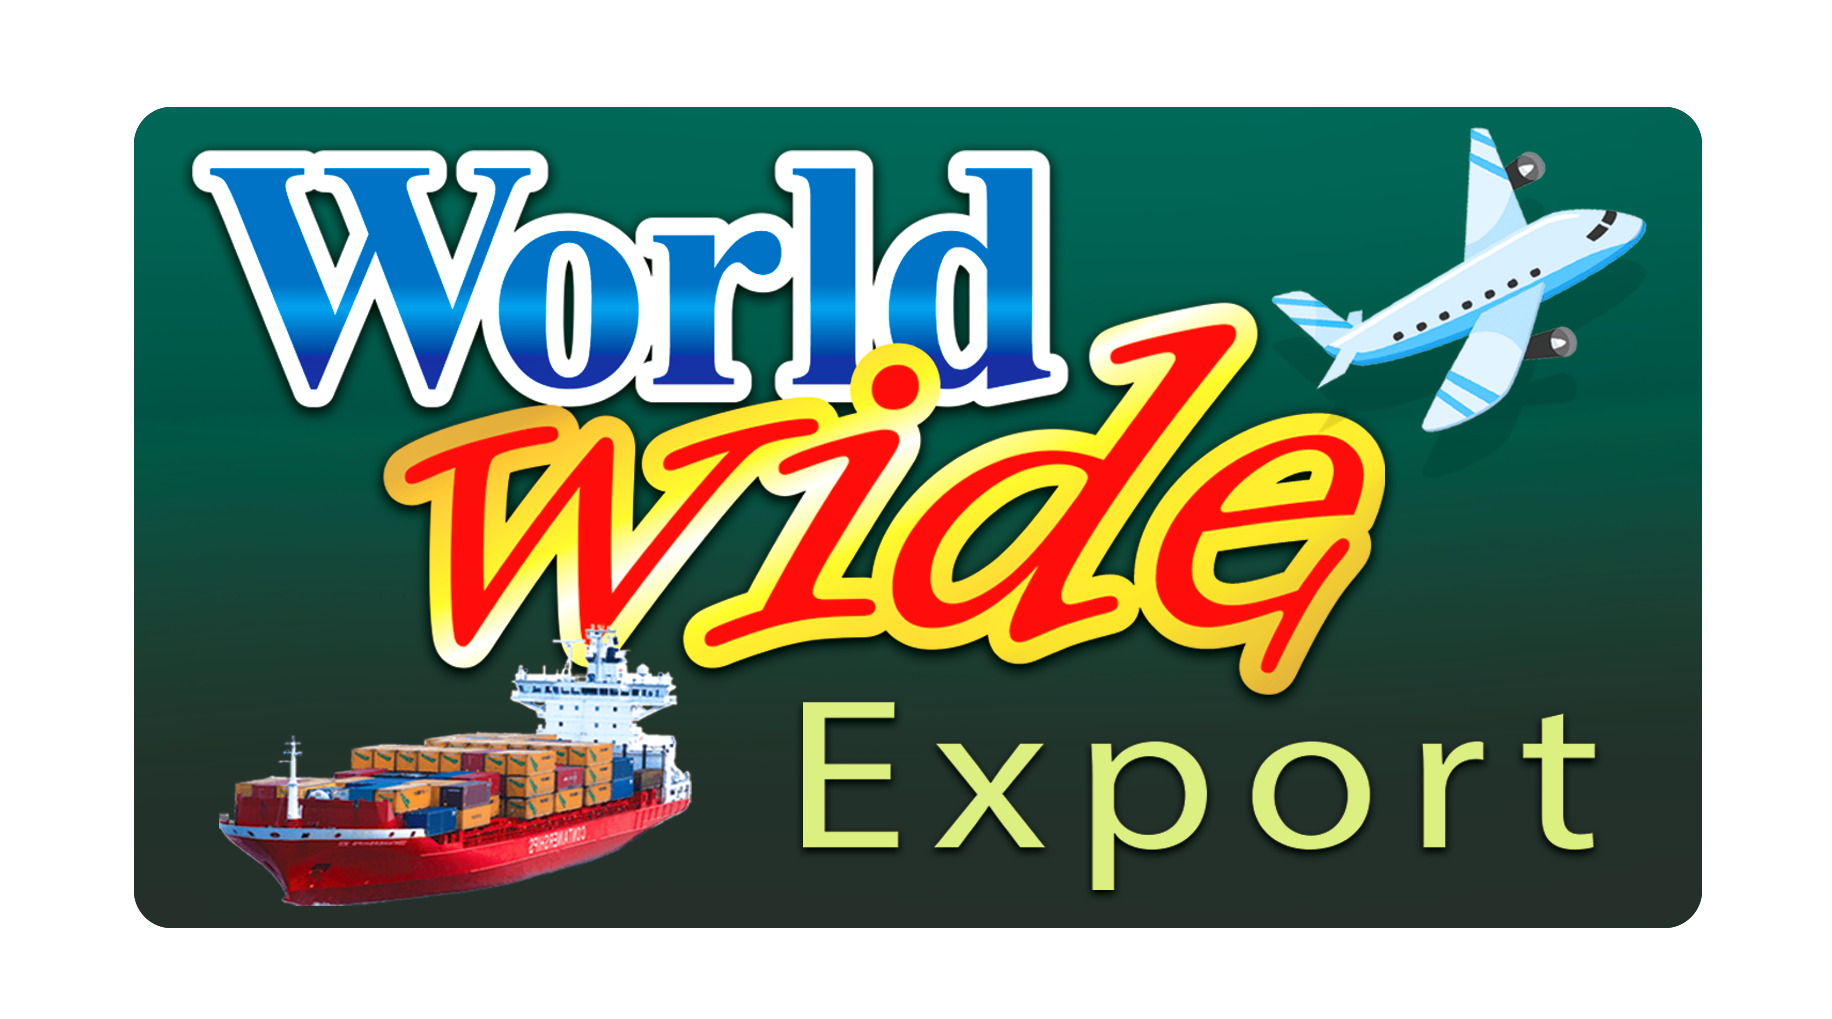 Worldwide Exports 